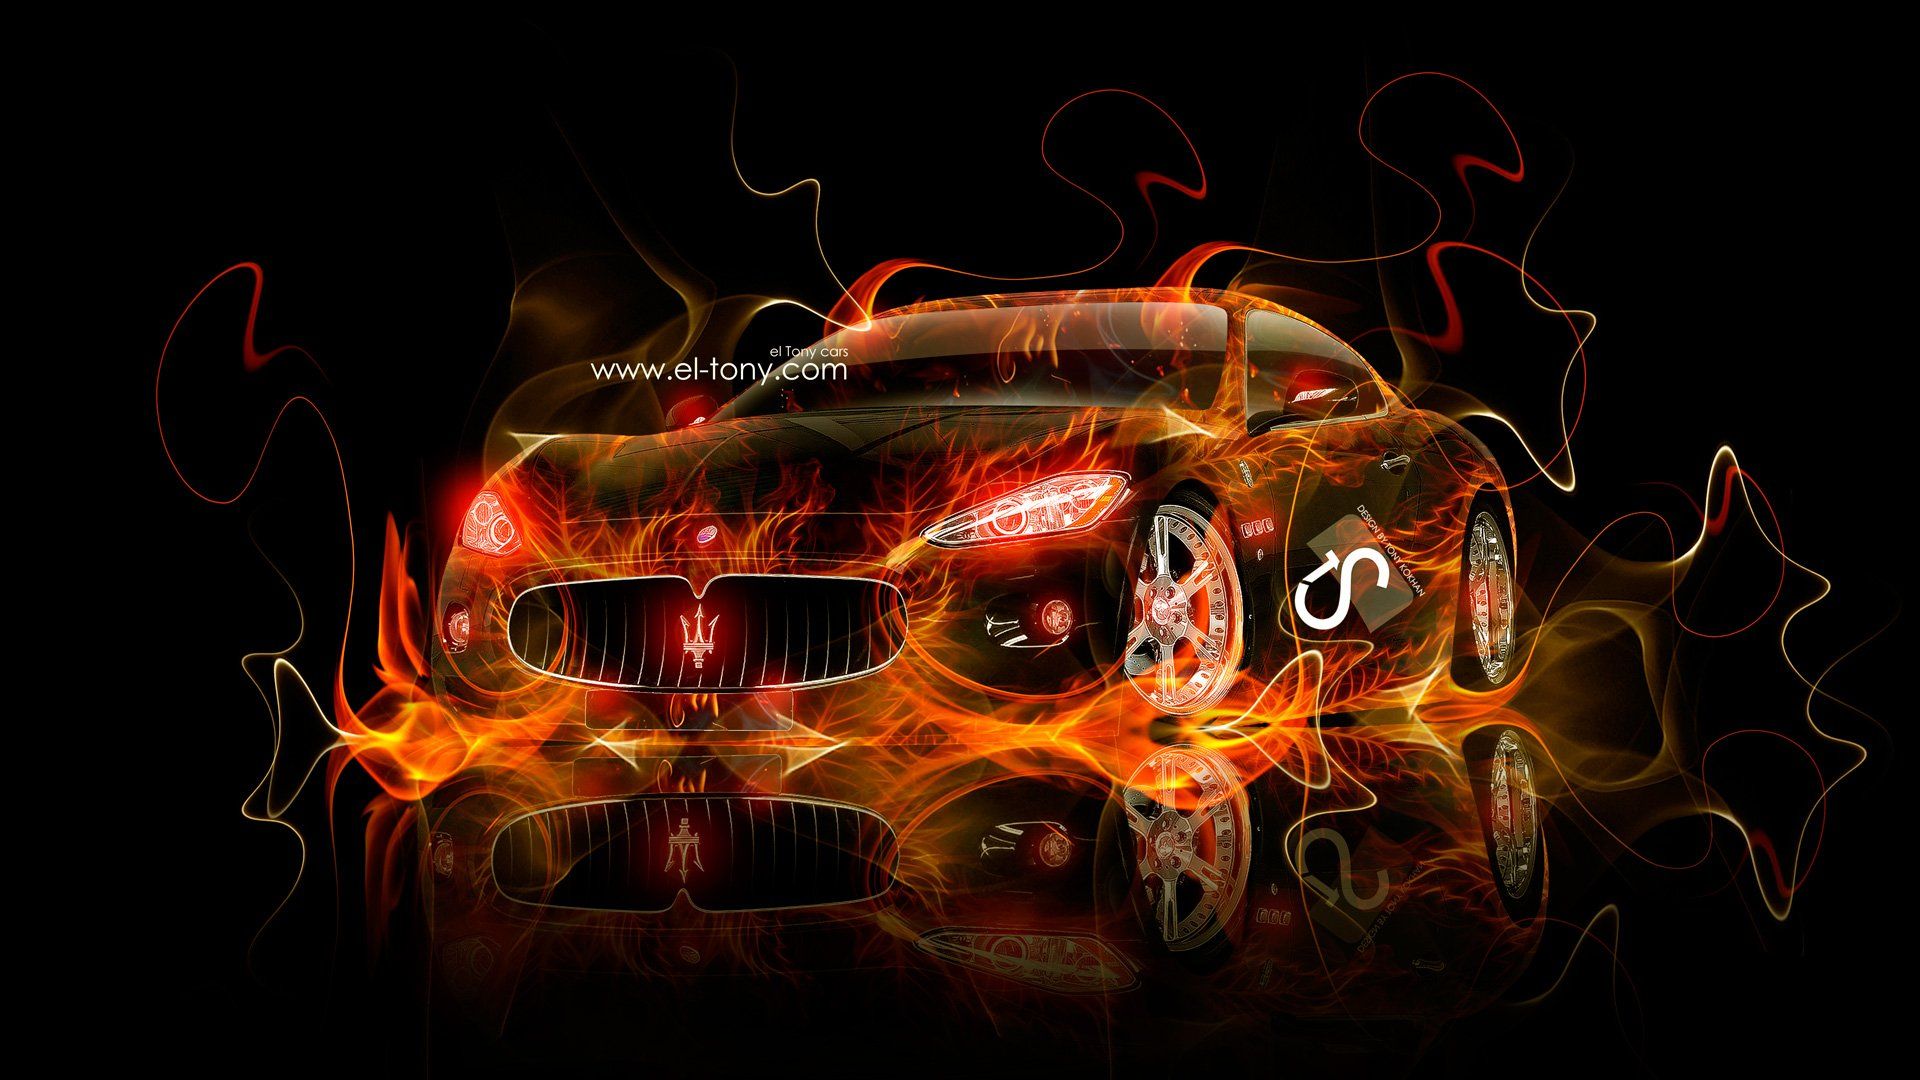 Fire Wallpaper Car Granturismo Maserati Design Kokhan. UNITED AUTO REPAIR SERVICE